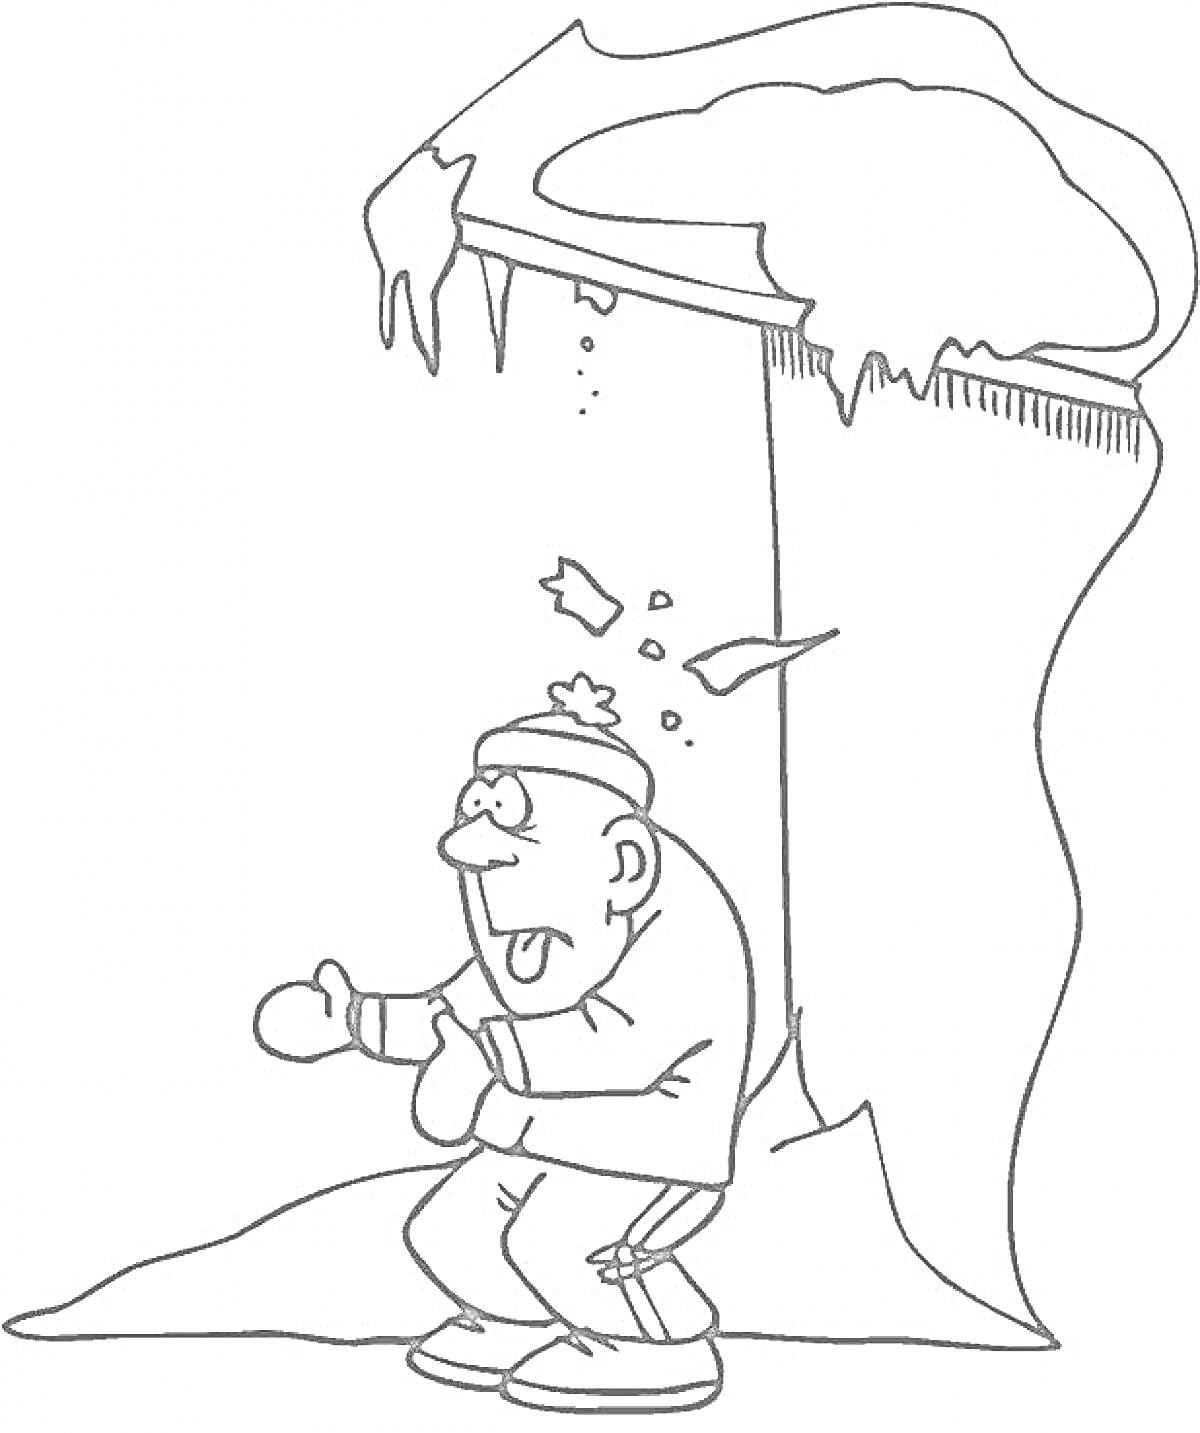 Леденящая опасность: сосулька, падающая с крыши, мужчина в зимней одежде